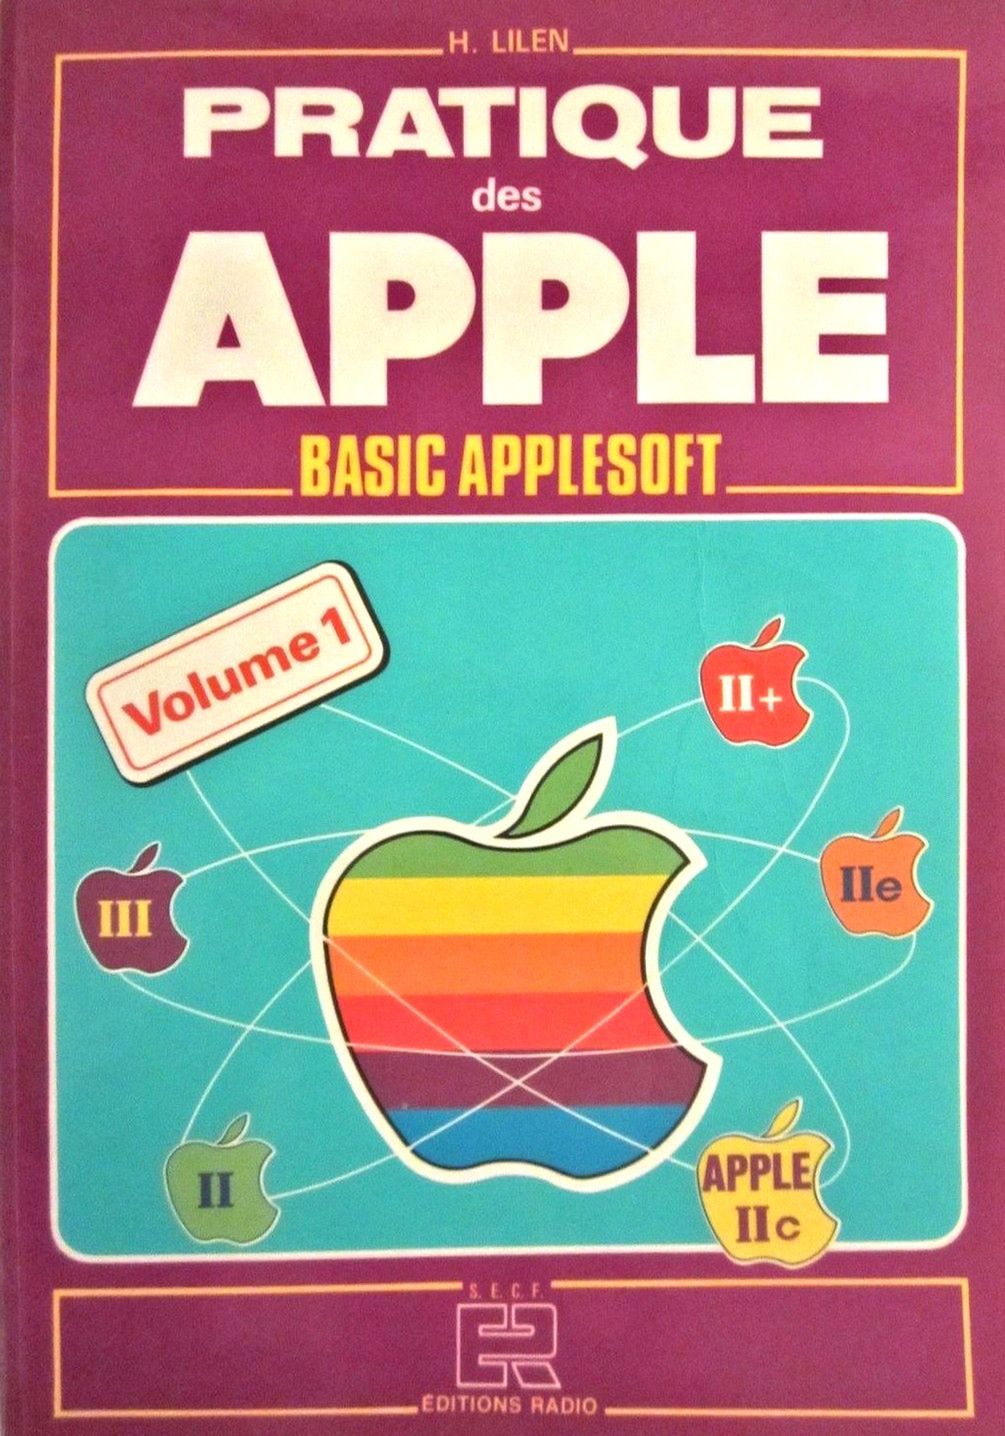 Okładka książki wydanej przez jednego z dystrybutorów komputerów Apple we Francji.